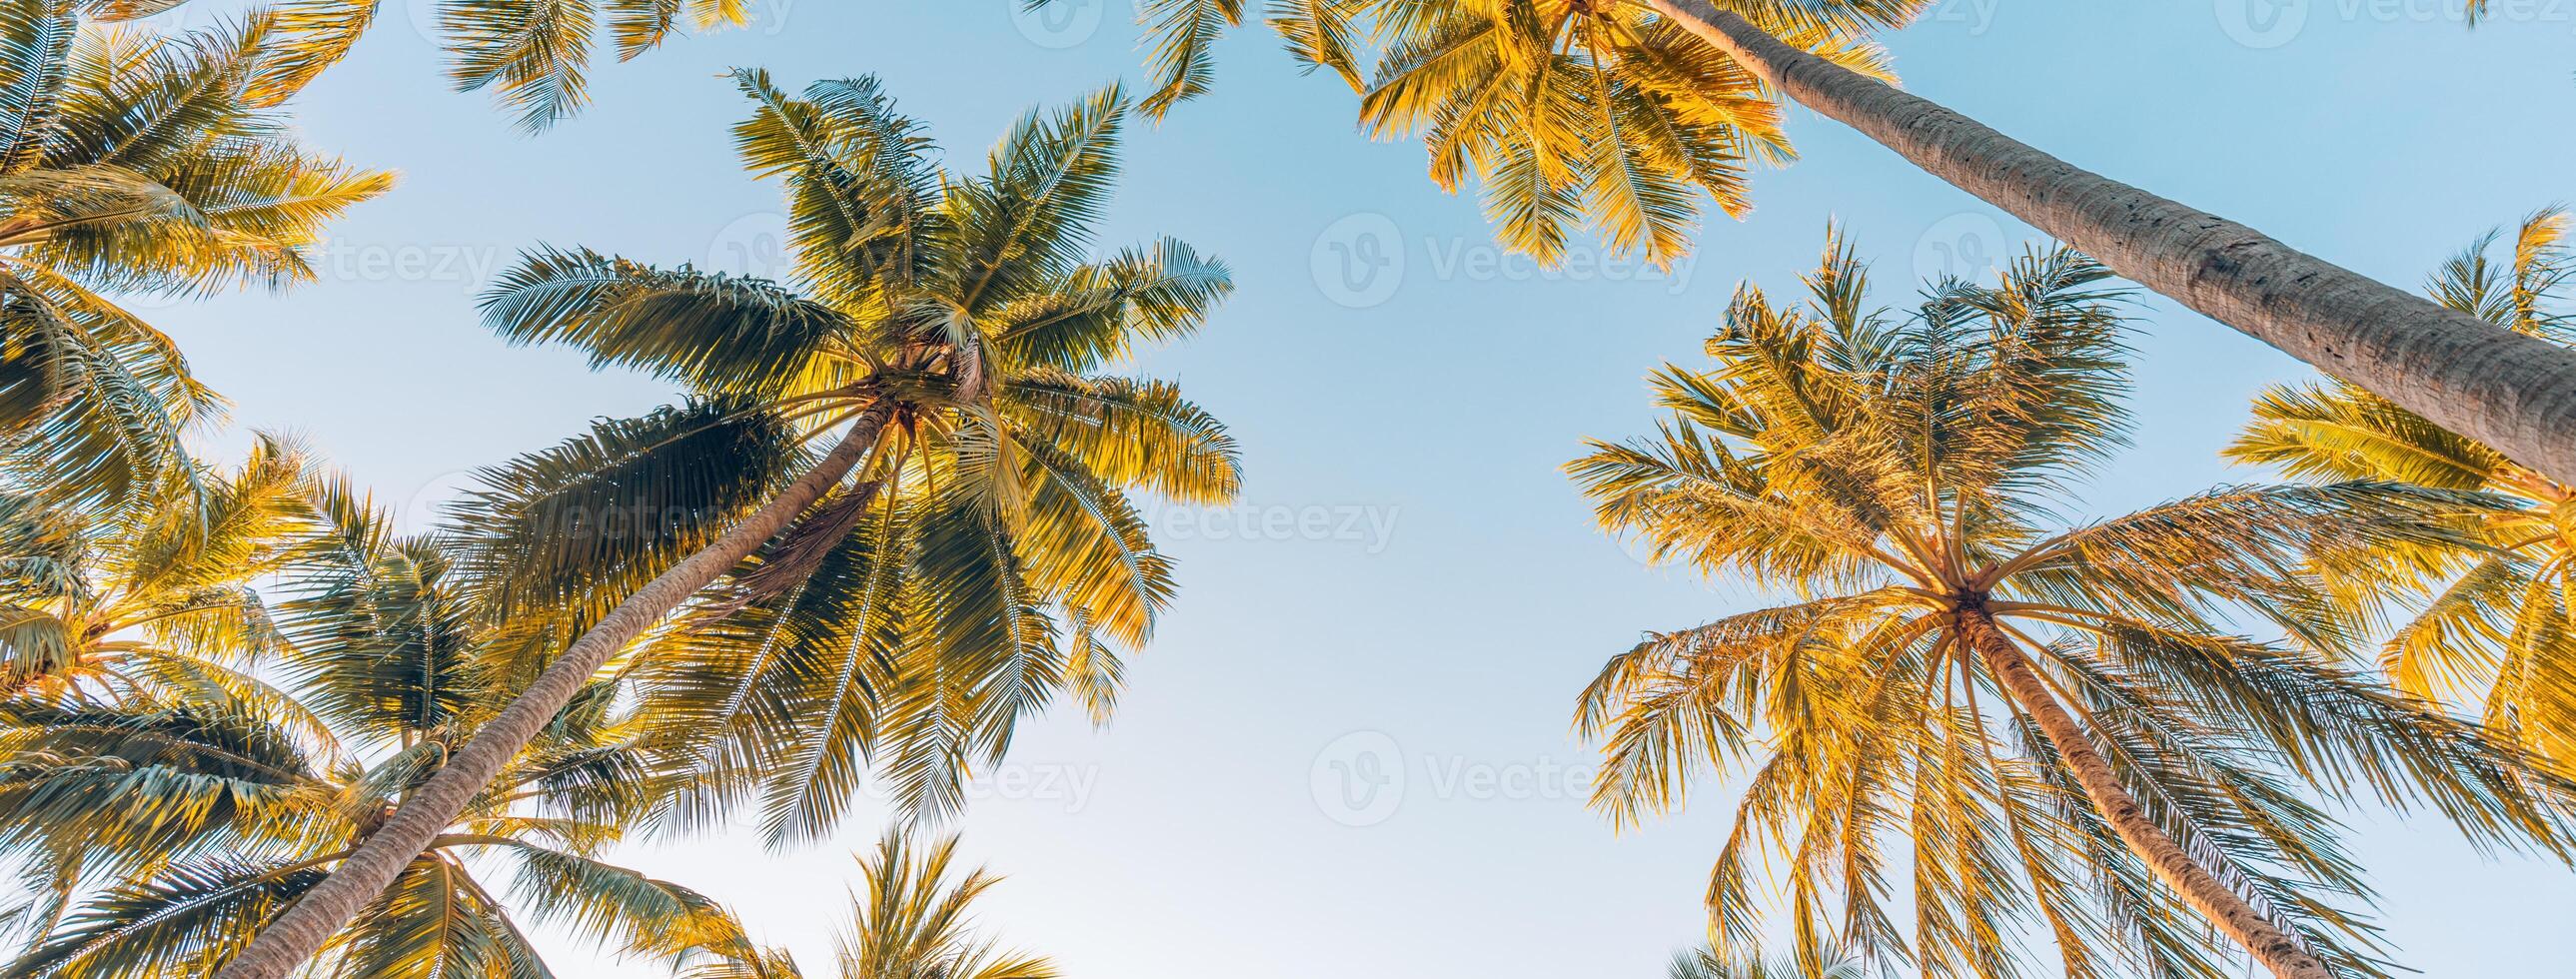 sommar semester baner. romantisk vibrafon av tropisk handflatan träd solljus på himmel bakgrund. utomhus- solnedgång exotisk lövverk närbild natur landskap. kokos handflatan träd lysande Sol över ljus himmel panorama foto